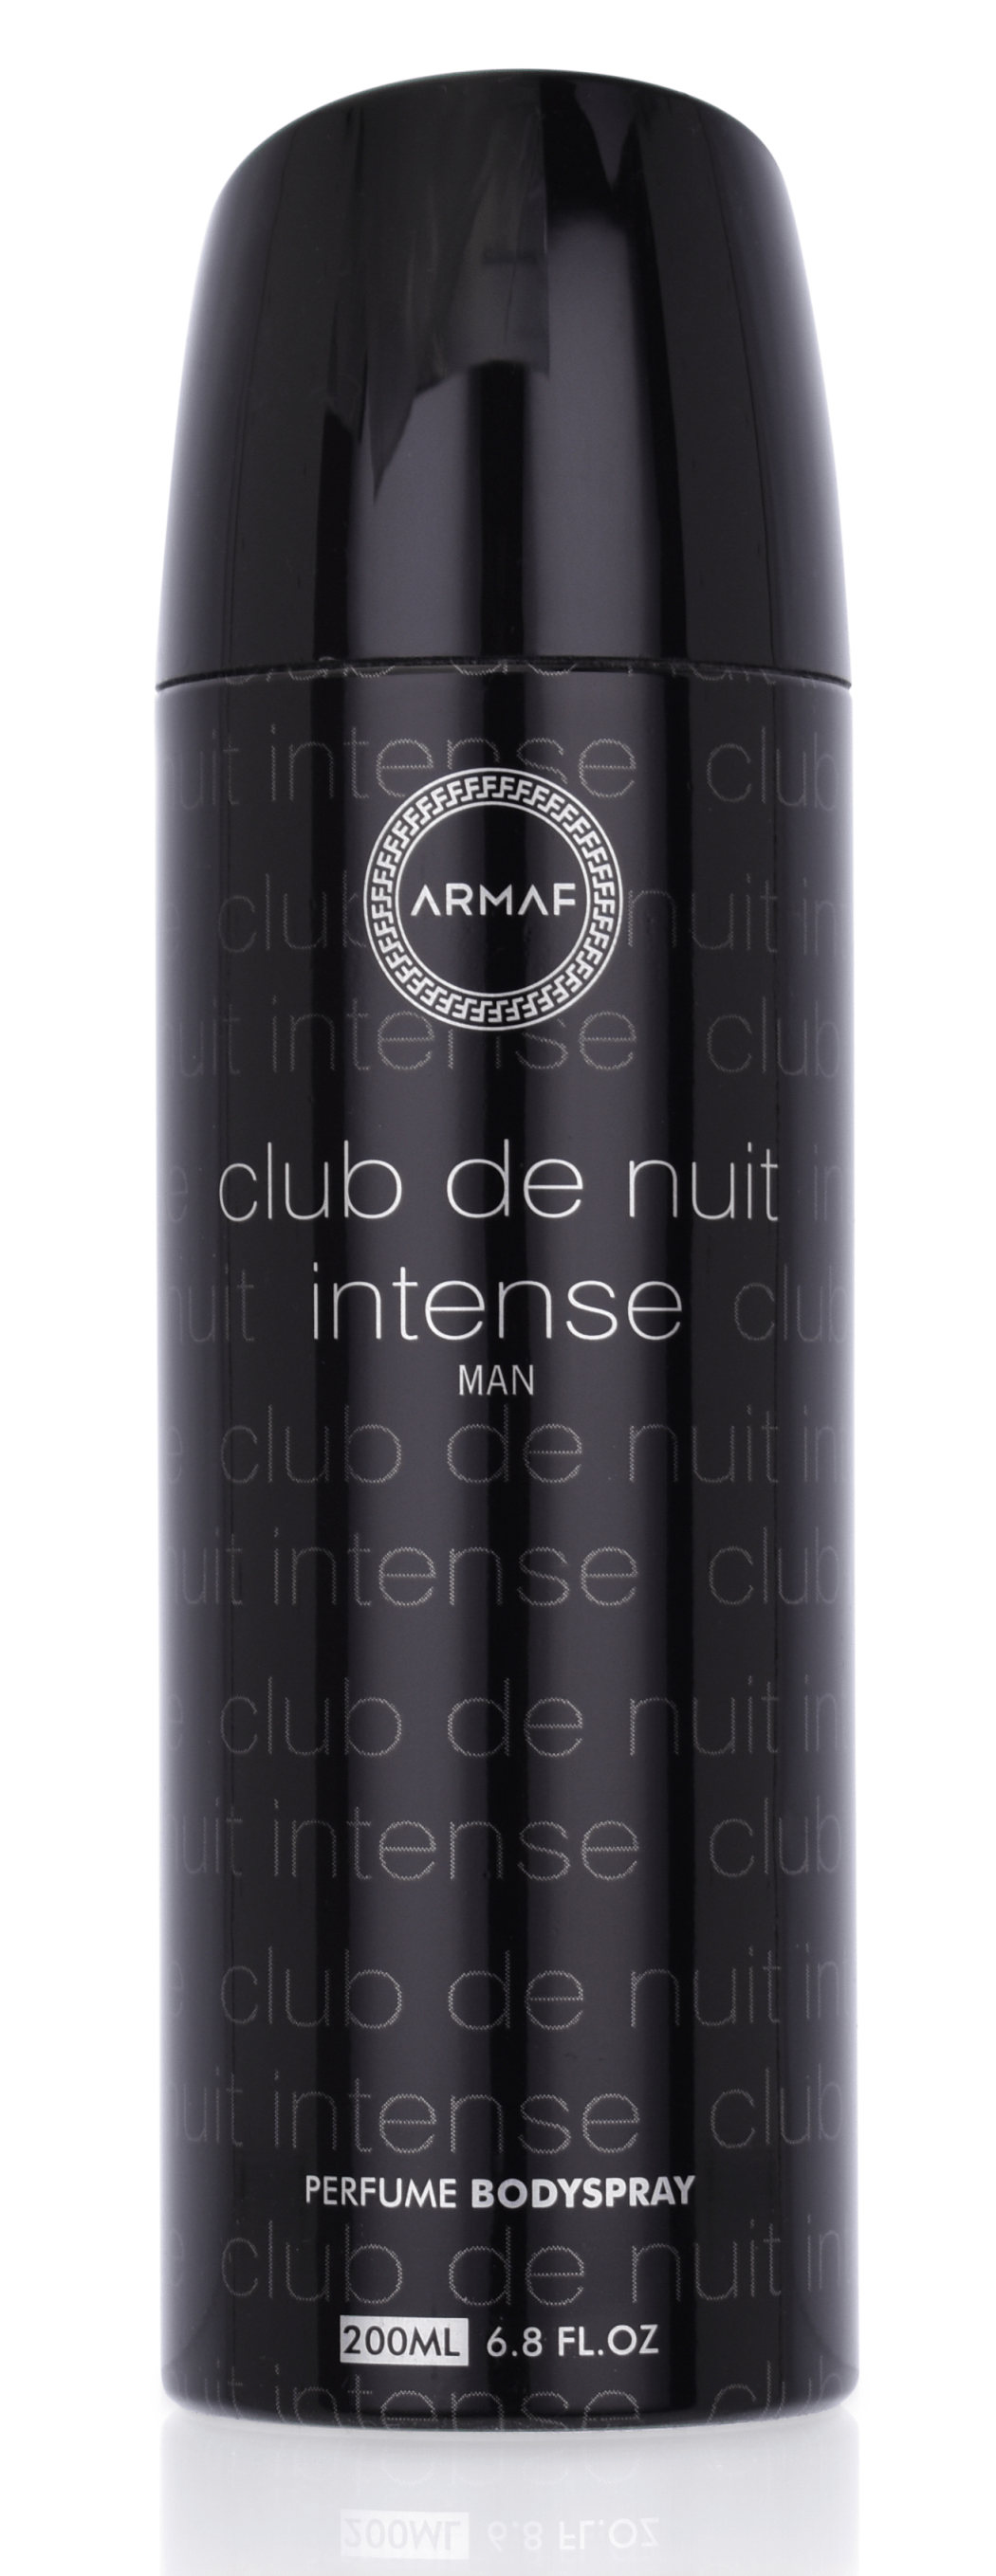 Armaf Club de Nuit Intense Man 200 ml Bodyspray